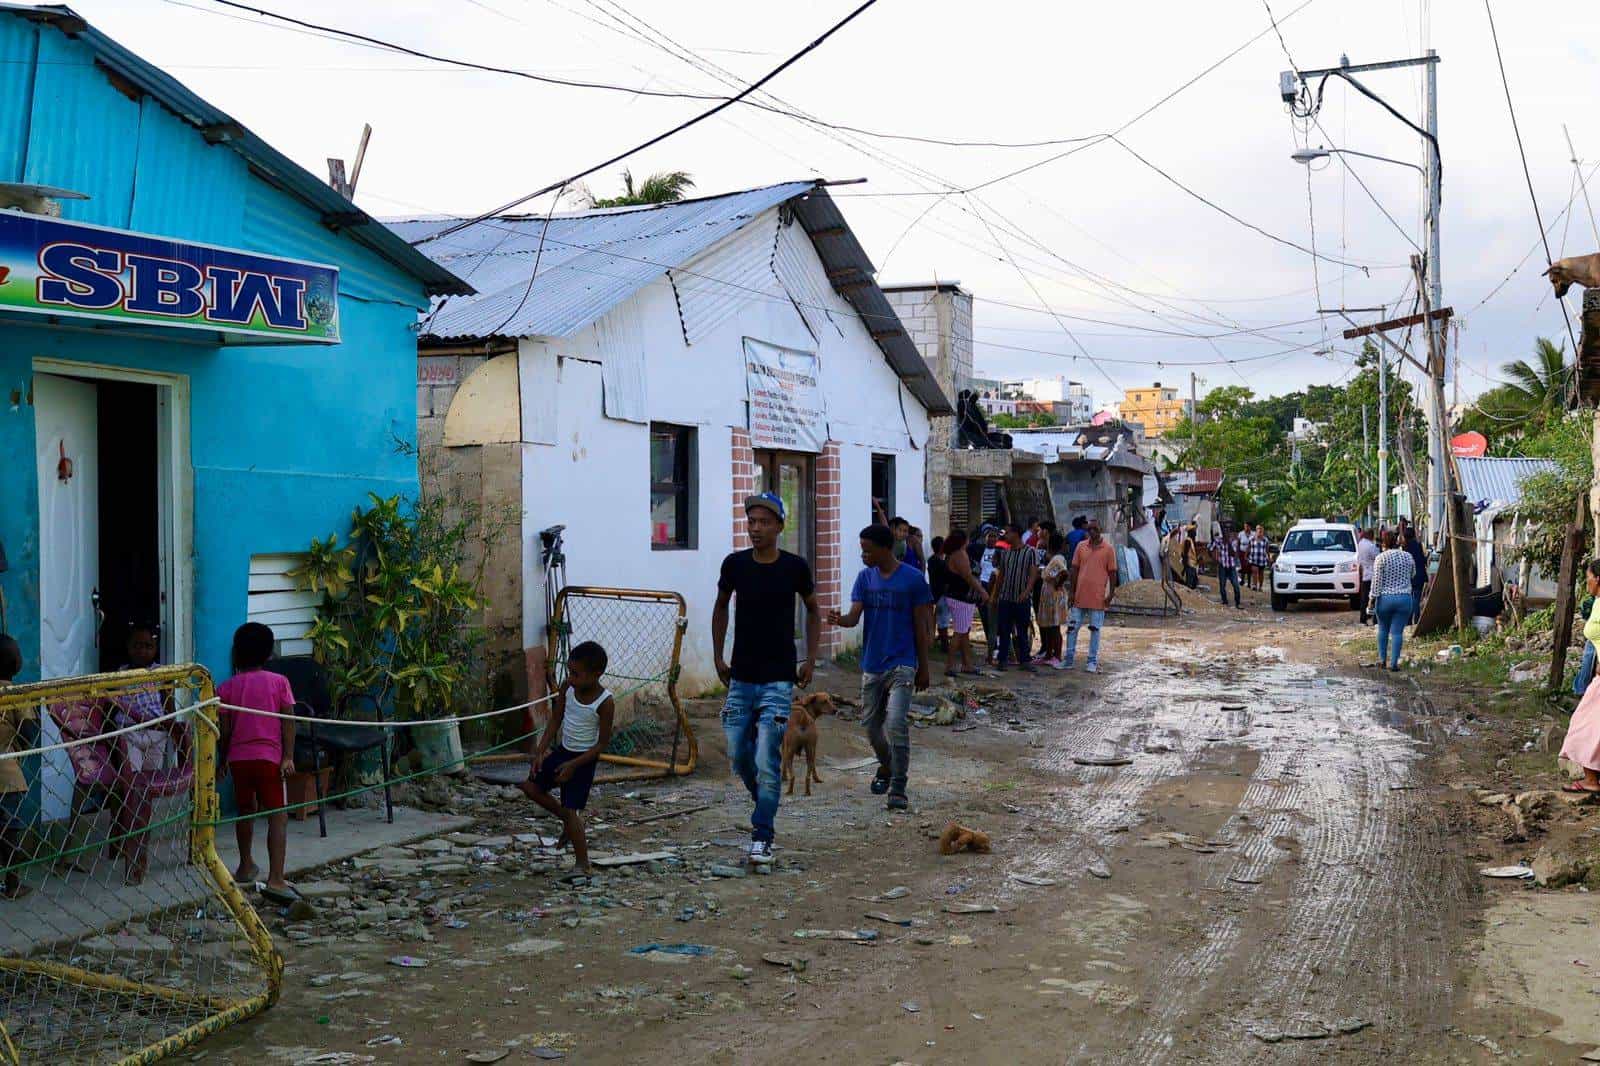 Personas caminan en una calle de la zona afectada por el disturbio tropical.